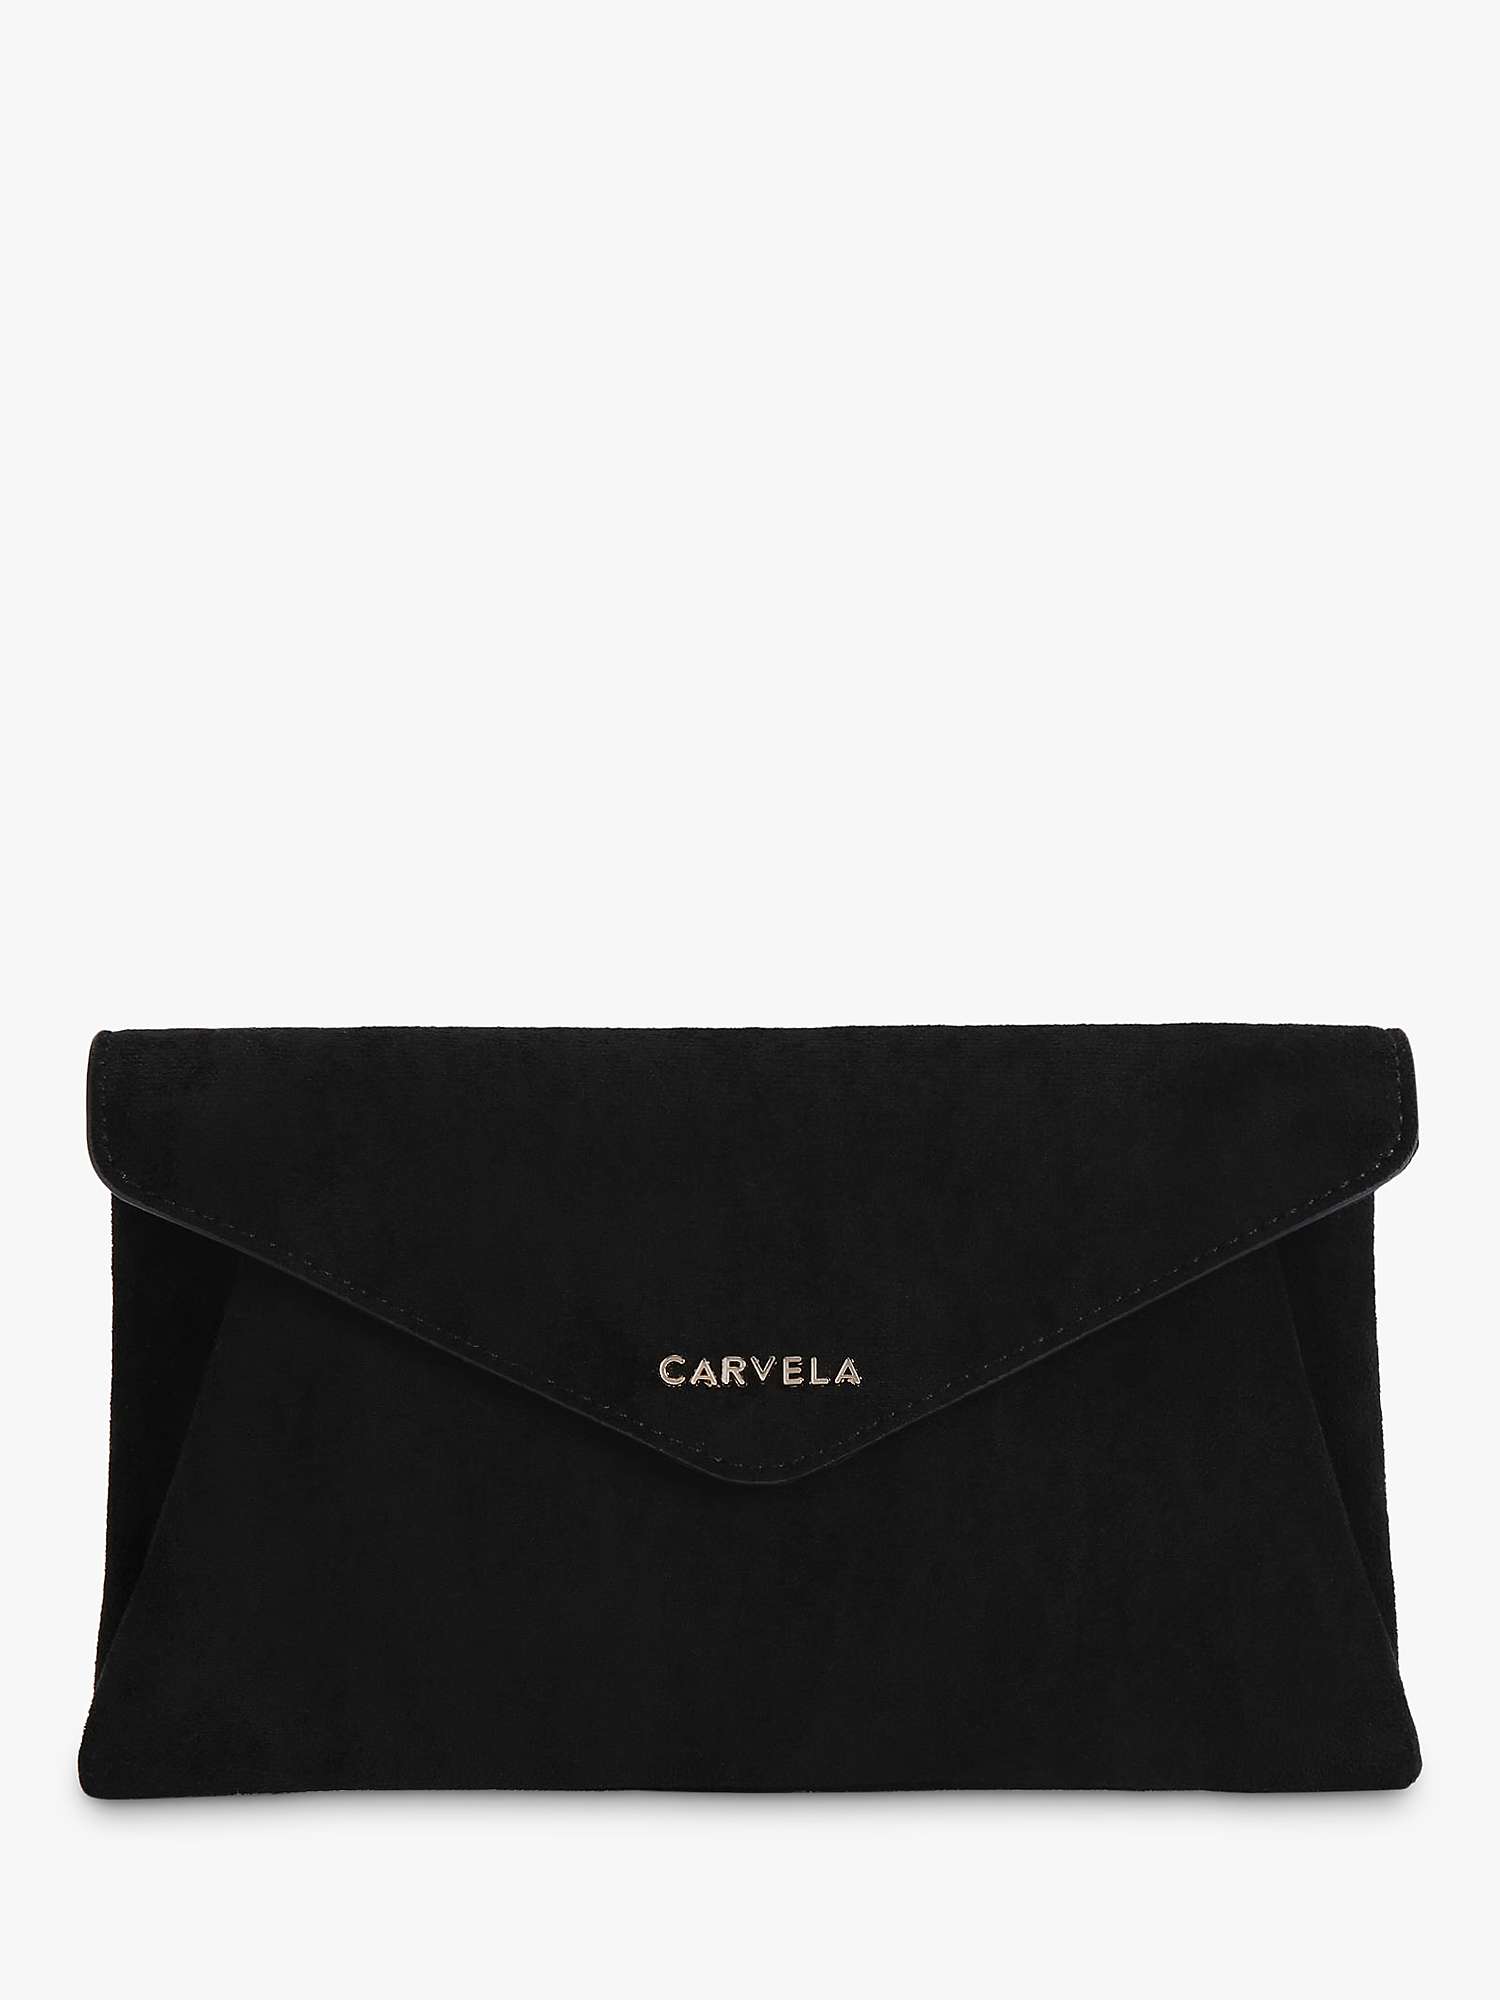 Buy Carvela Megan Suede Envelope Clutch Bag Online at johnlewis.com